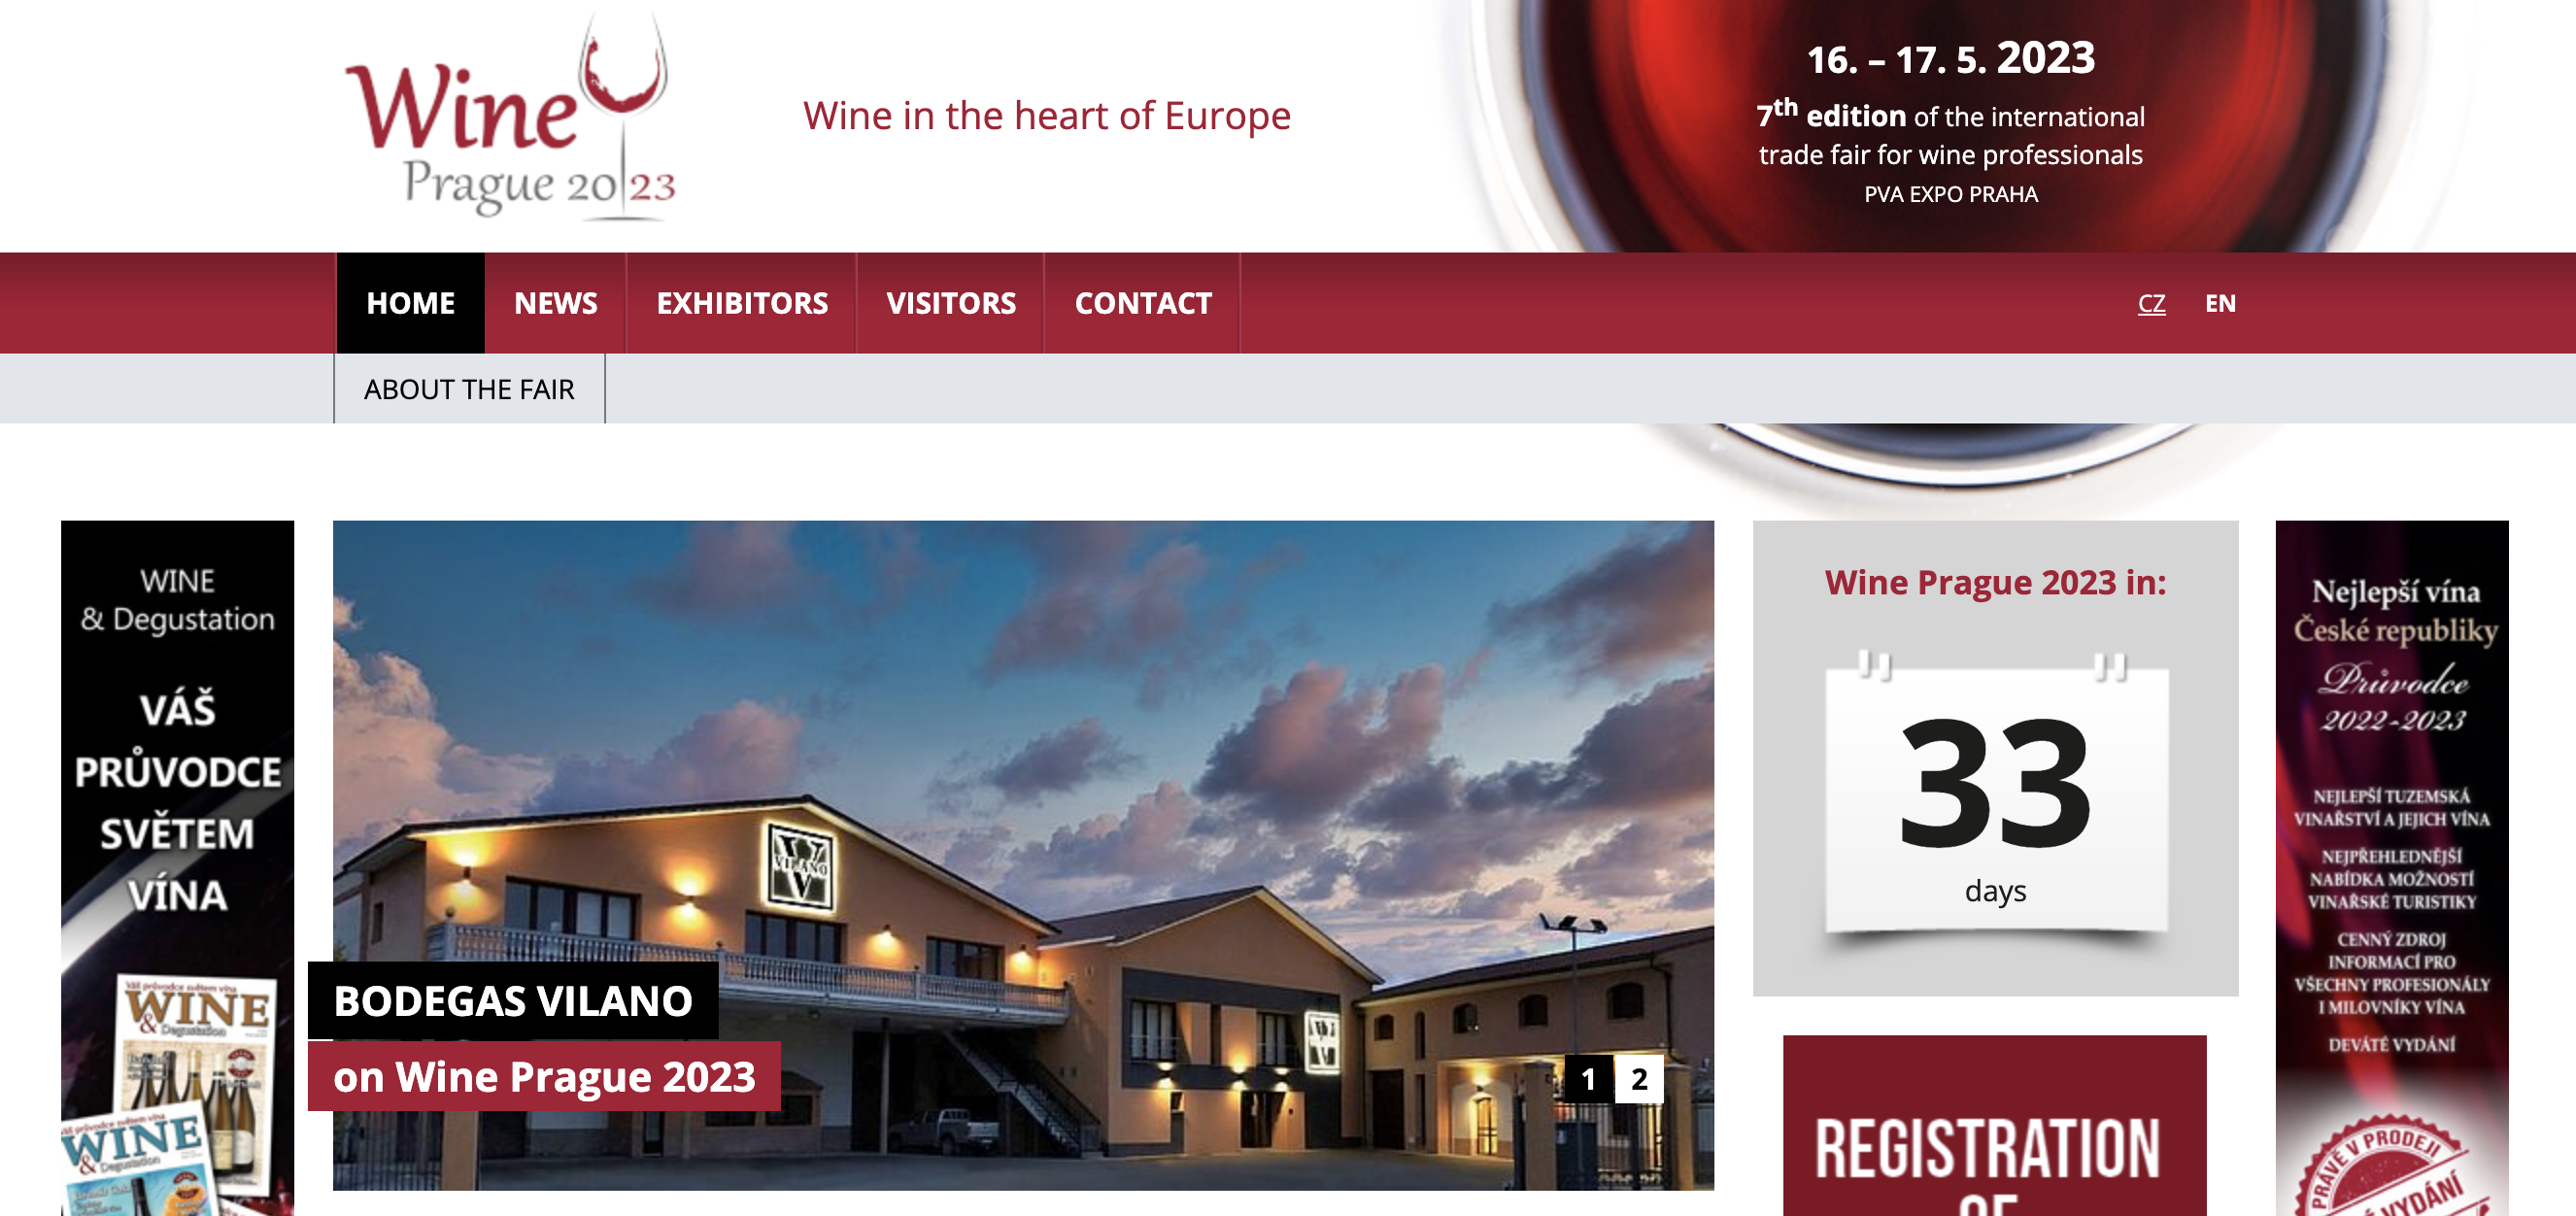 Die Weinkellerei Vilano wird auf der WinePrague 2023 vertreten sein